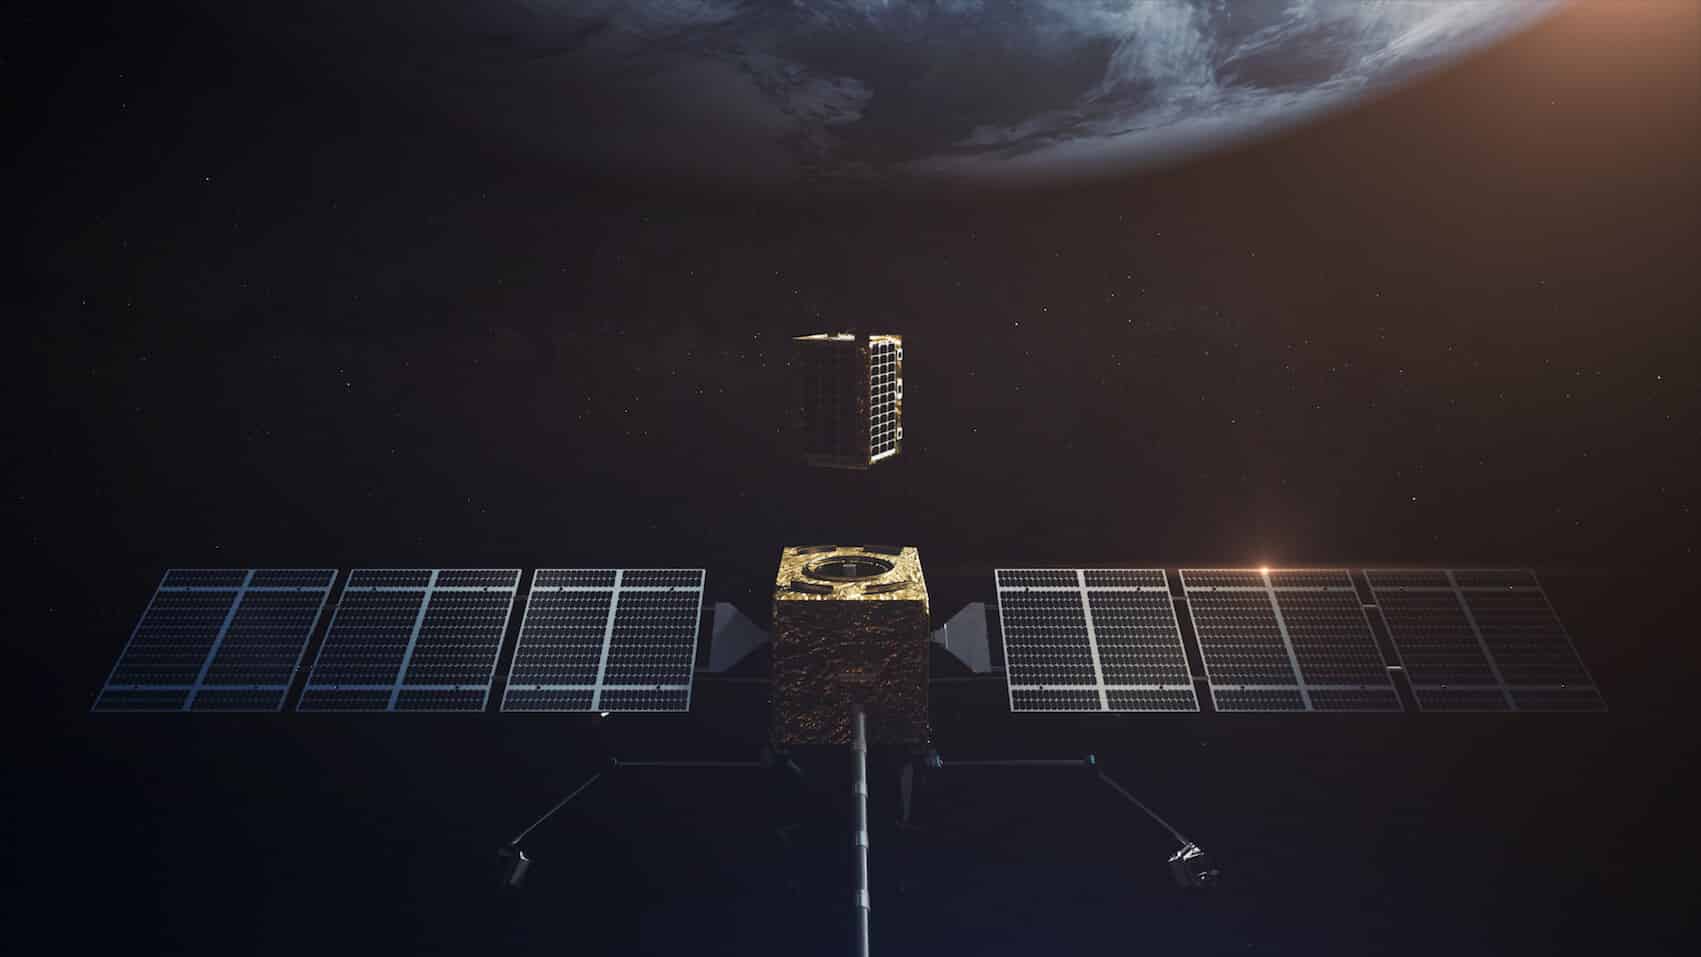 DONITZA PR תמונת המחשה של המפגש בחלל בין תחנת התדלוק (הקופסה המלבנית שלמעלה) עם לוויין הלקסי של אסטרוסקייל (קוביית הזהב עם הכנפיים).  ״אסטרוסקייל/אוביטפאב״.